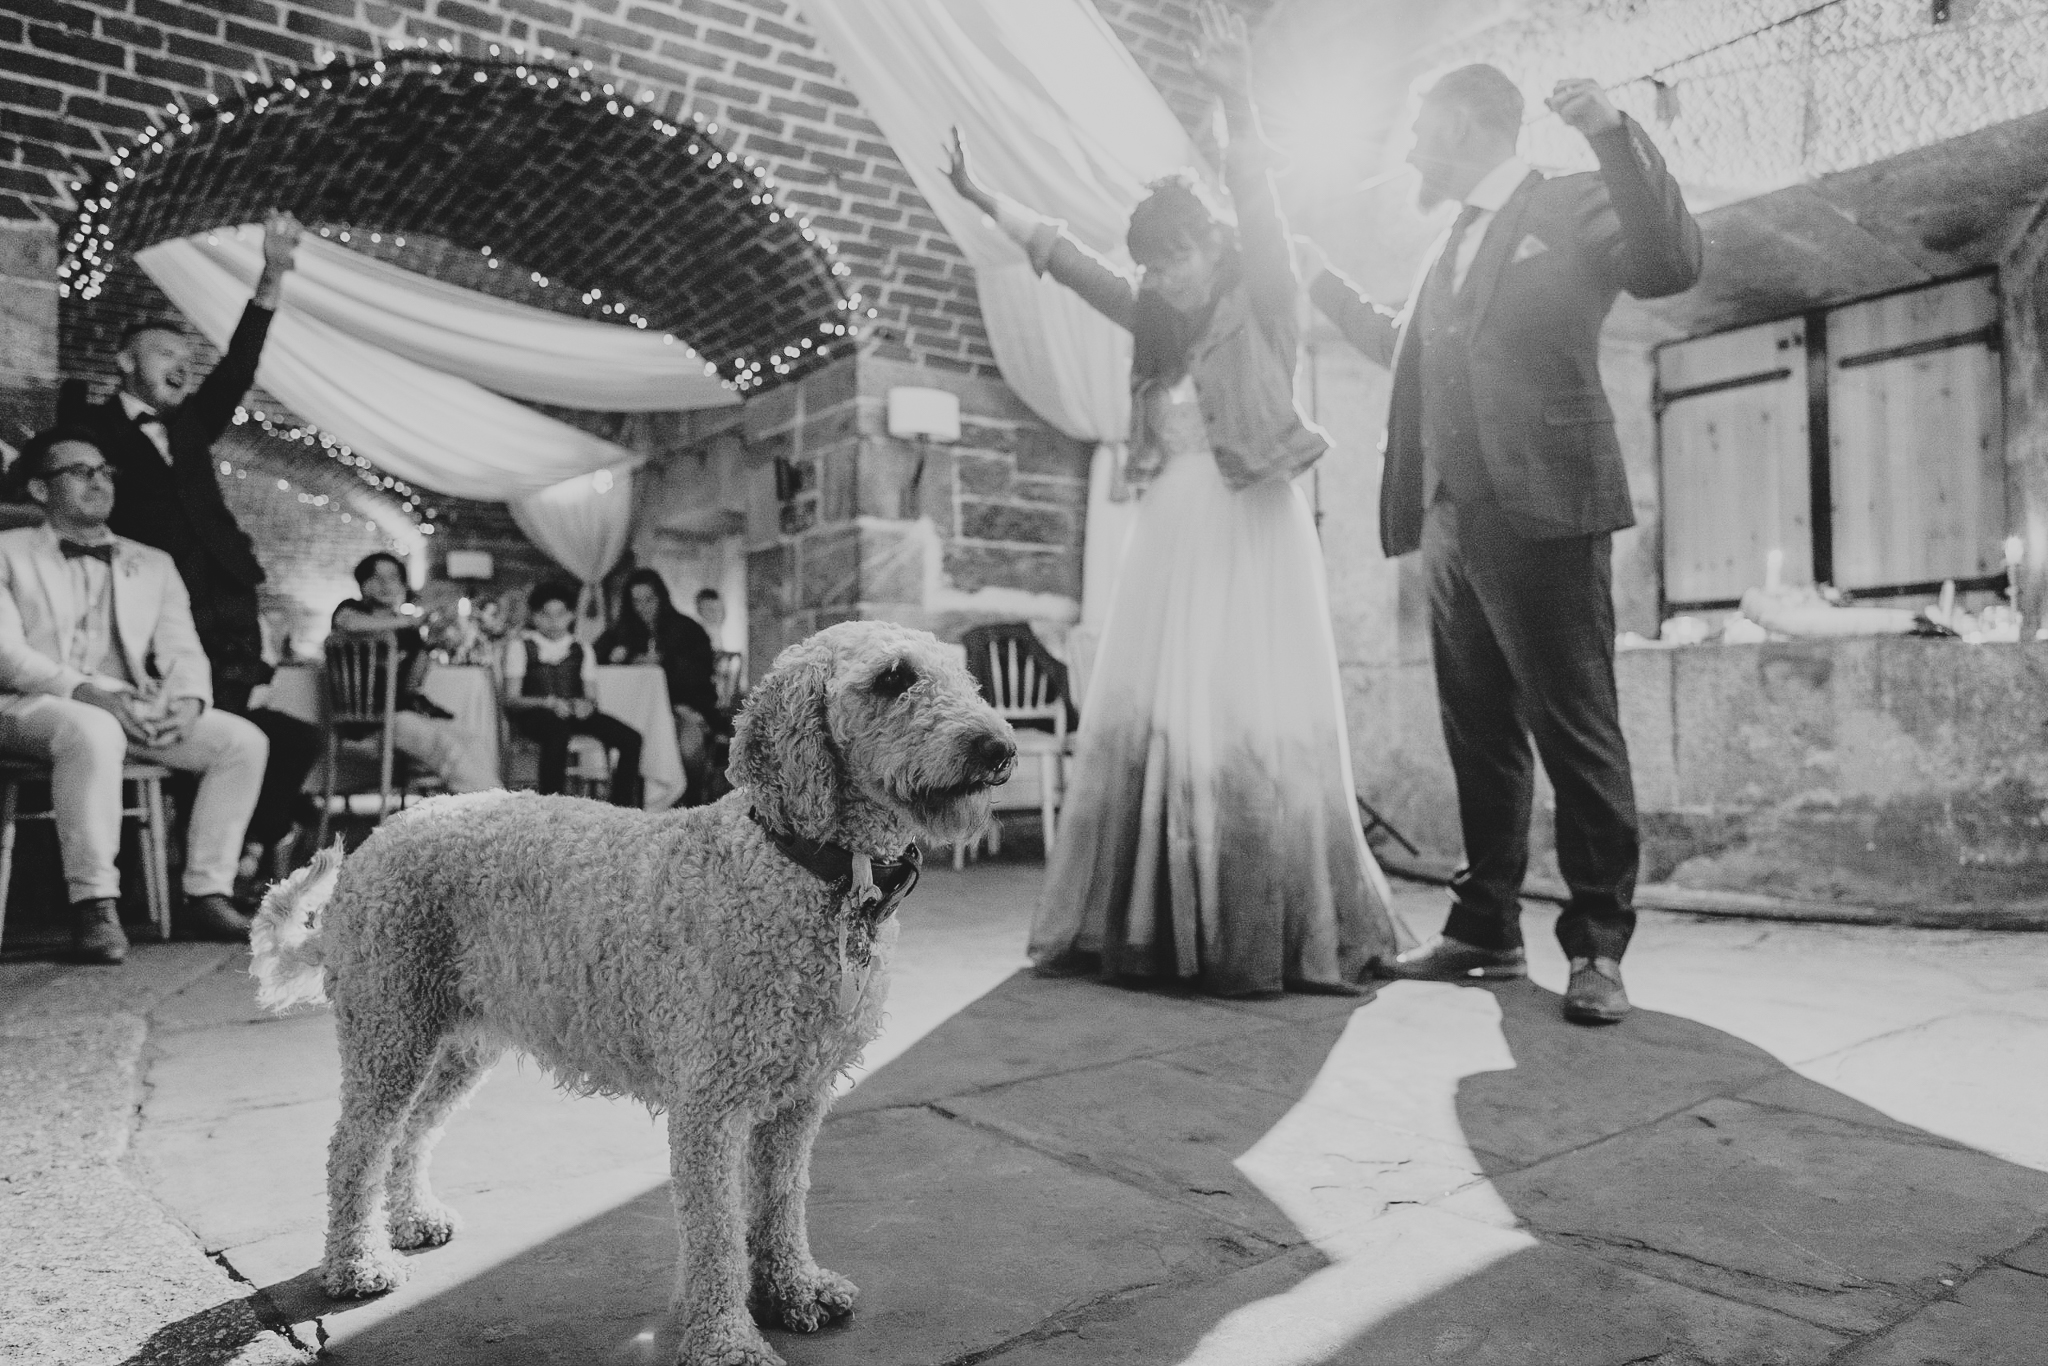 dog-friendly wedding venue in Cornwall: Polhawn Fort